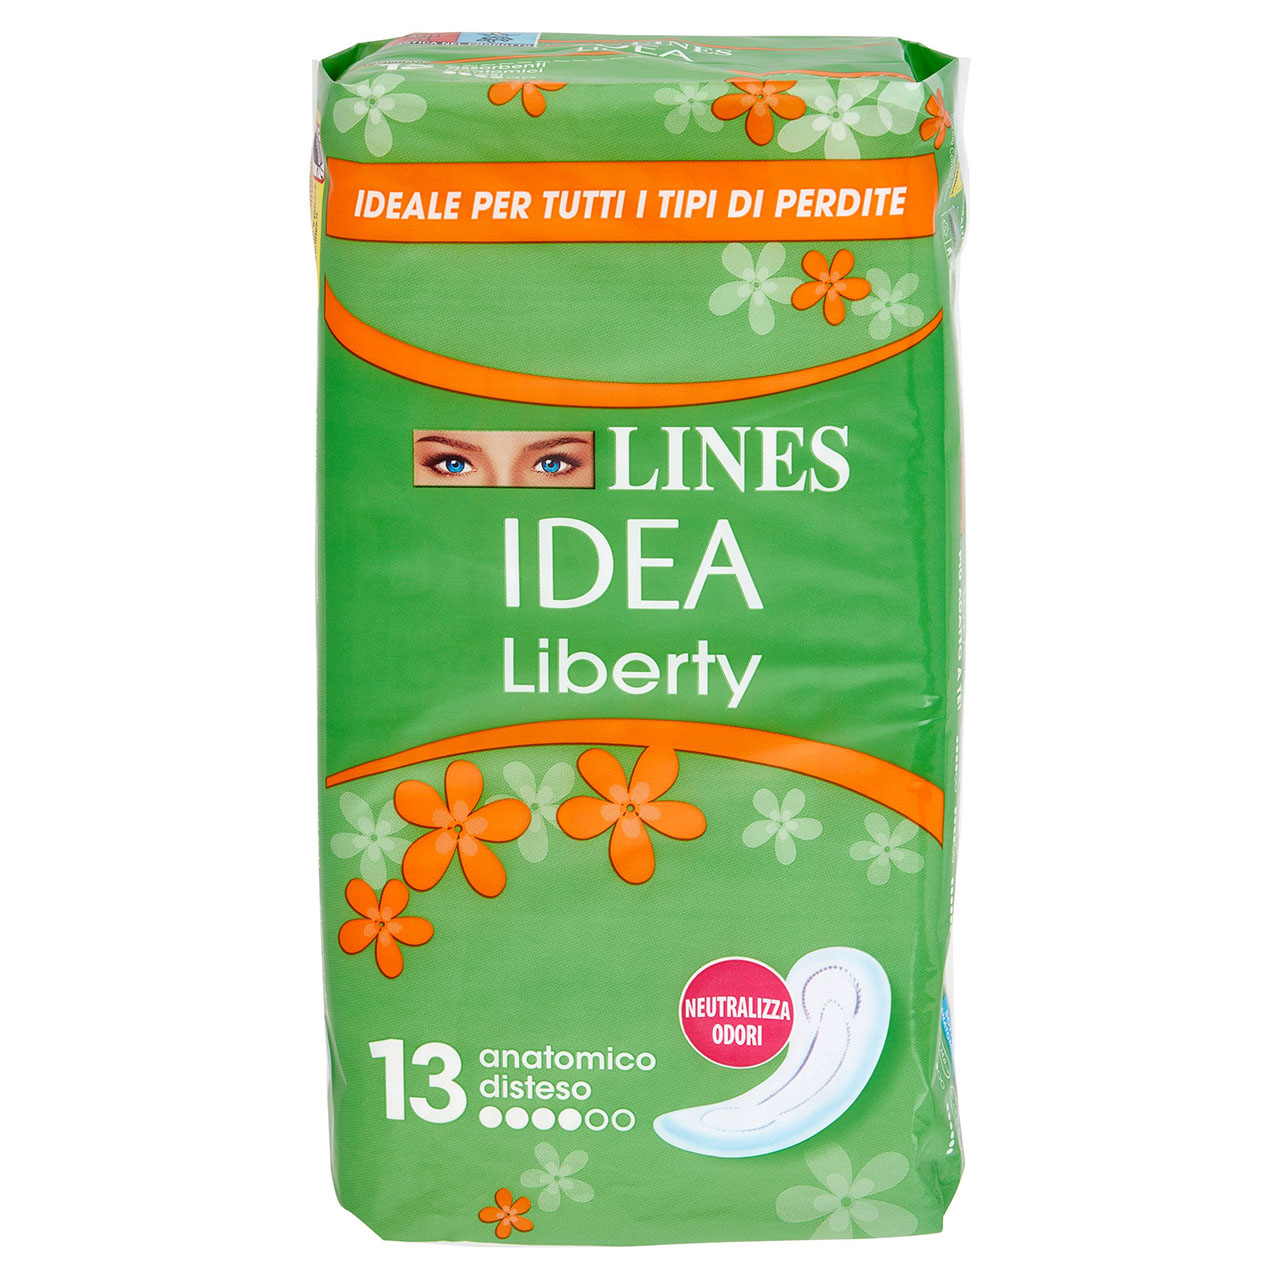 Lines Idea Liberty Giorno in vendita online